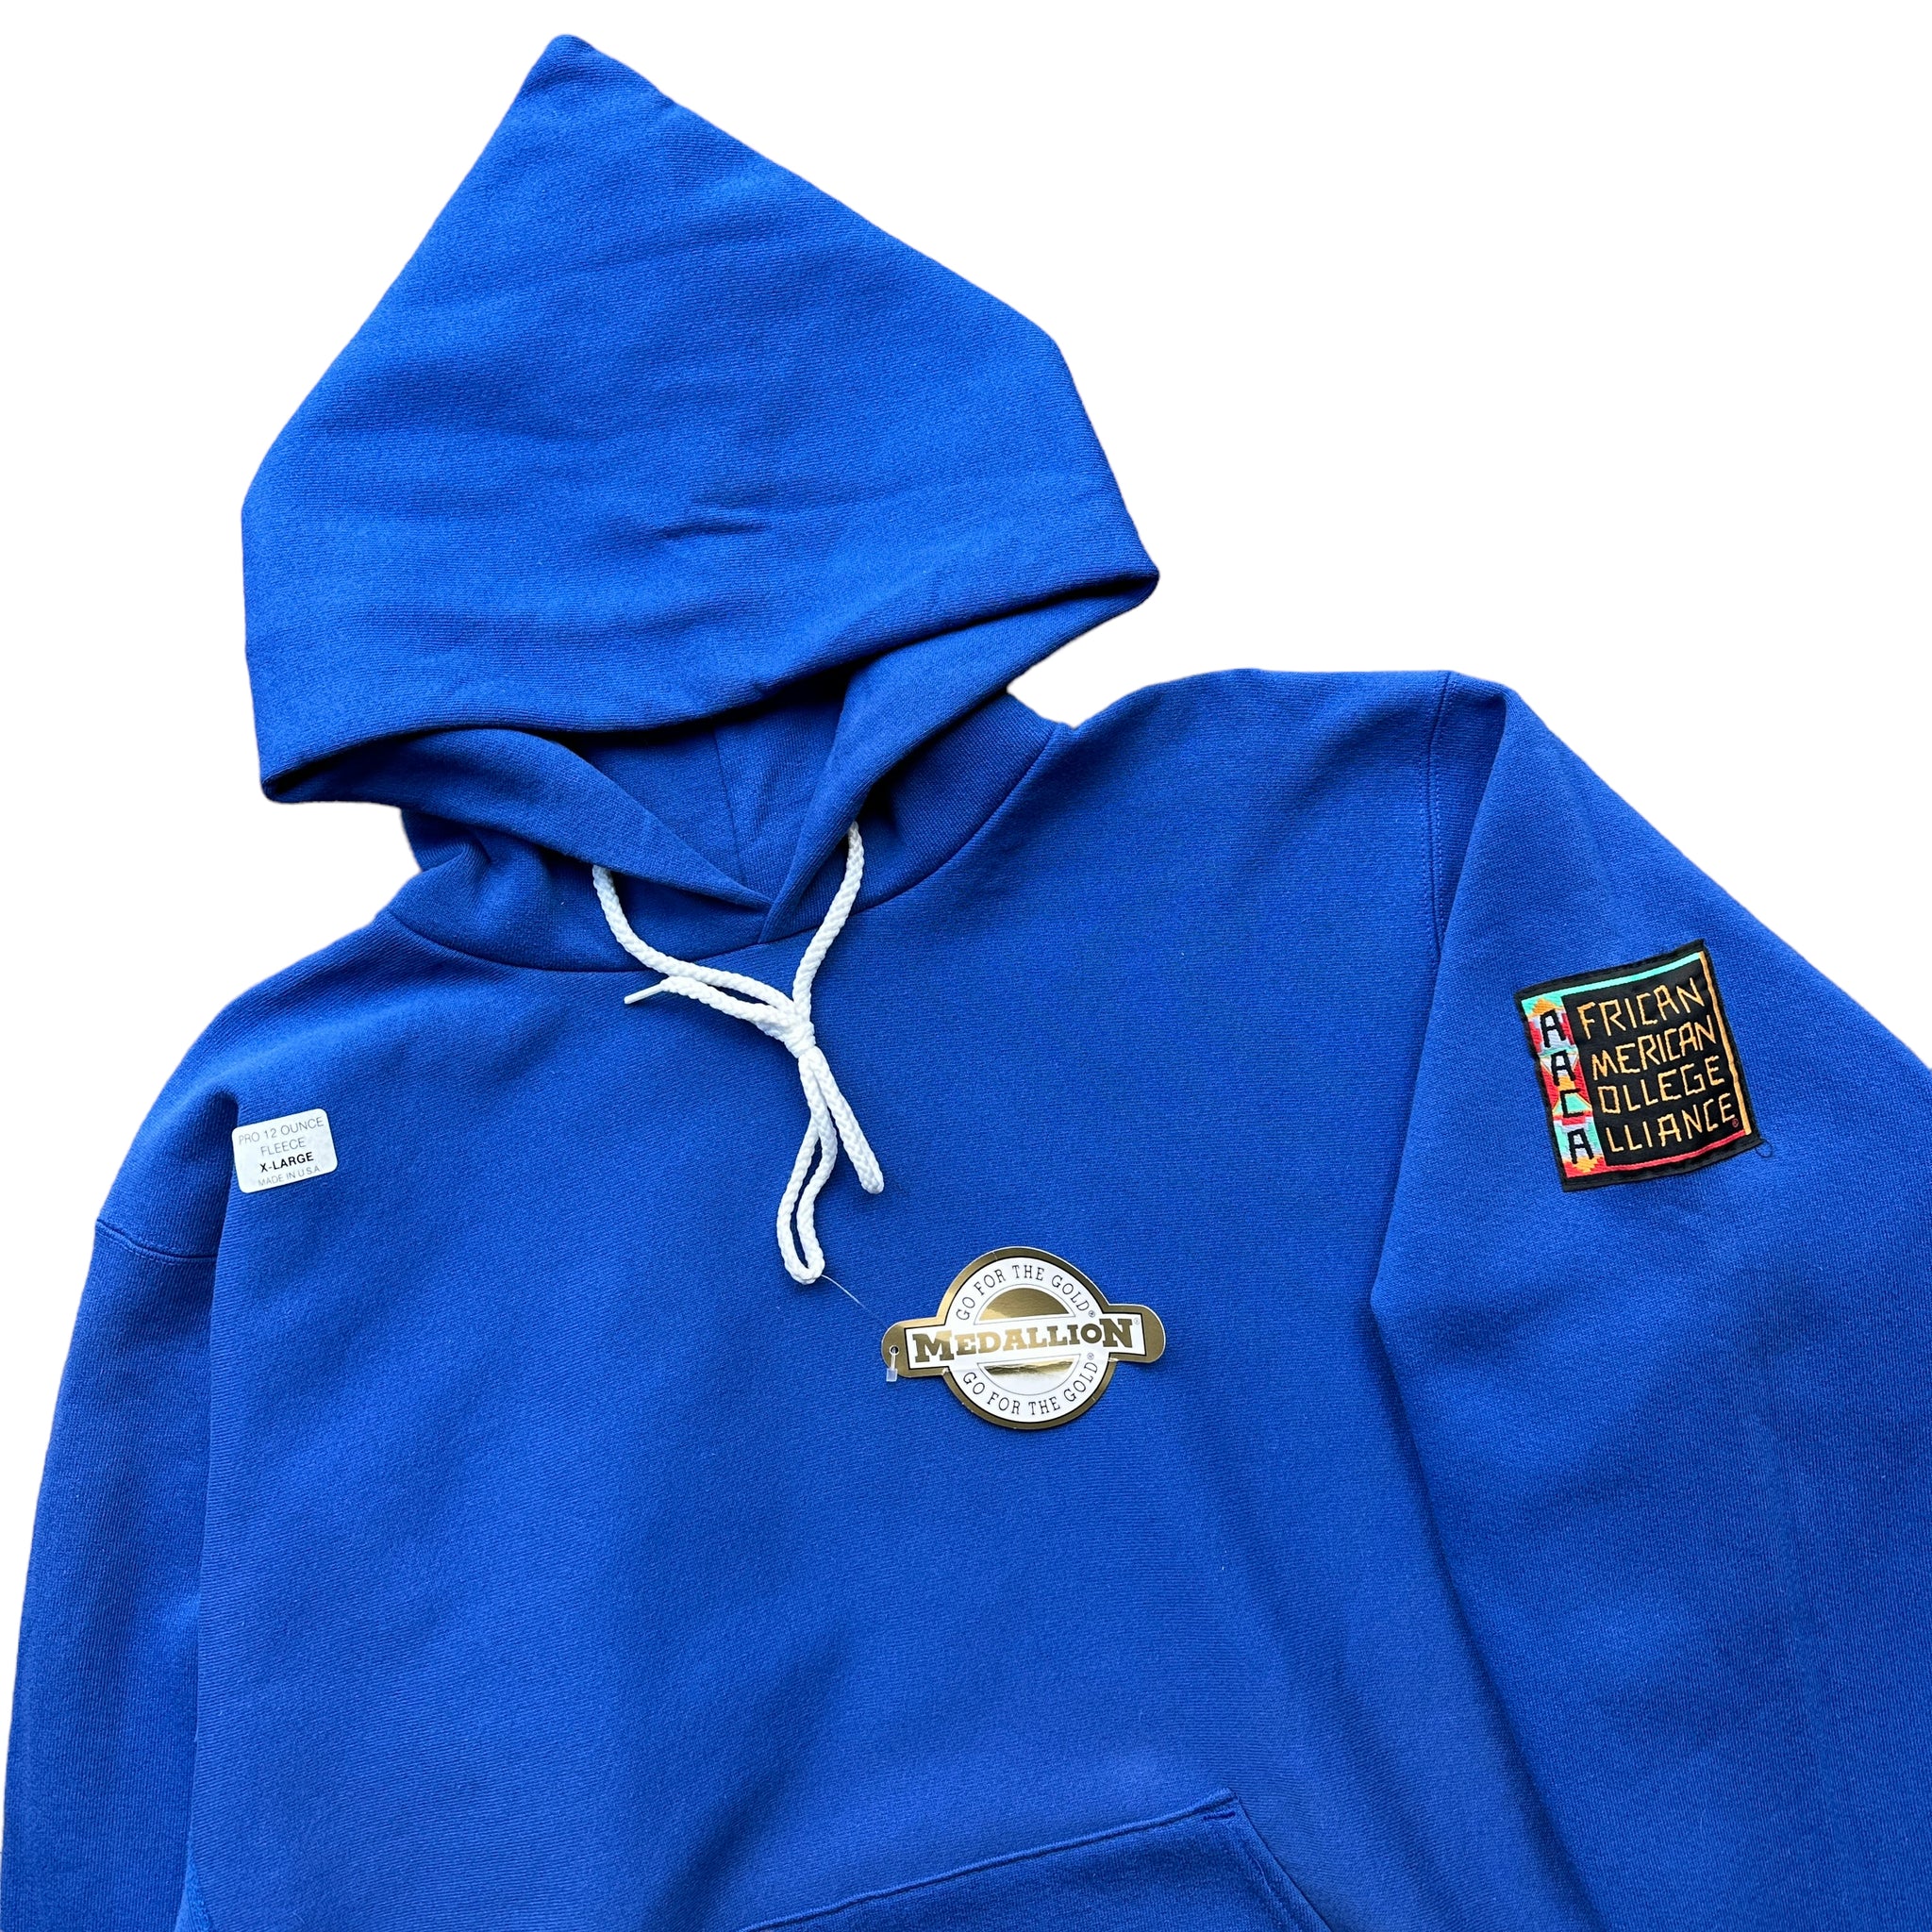 90s AACA blank medallion hoodie XL